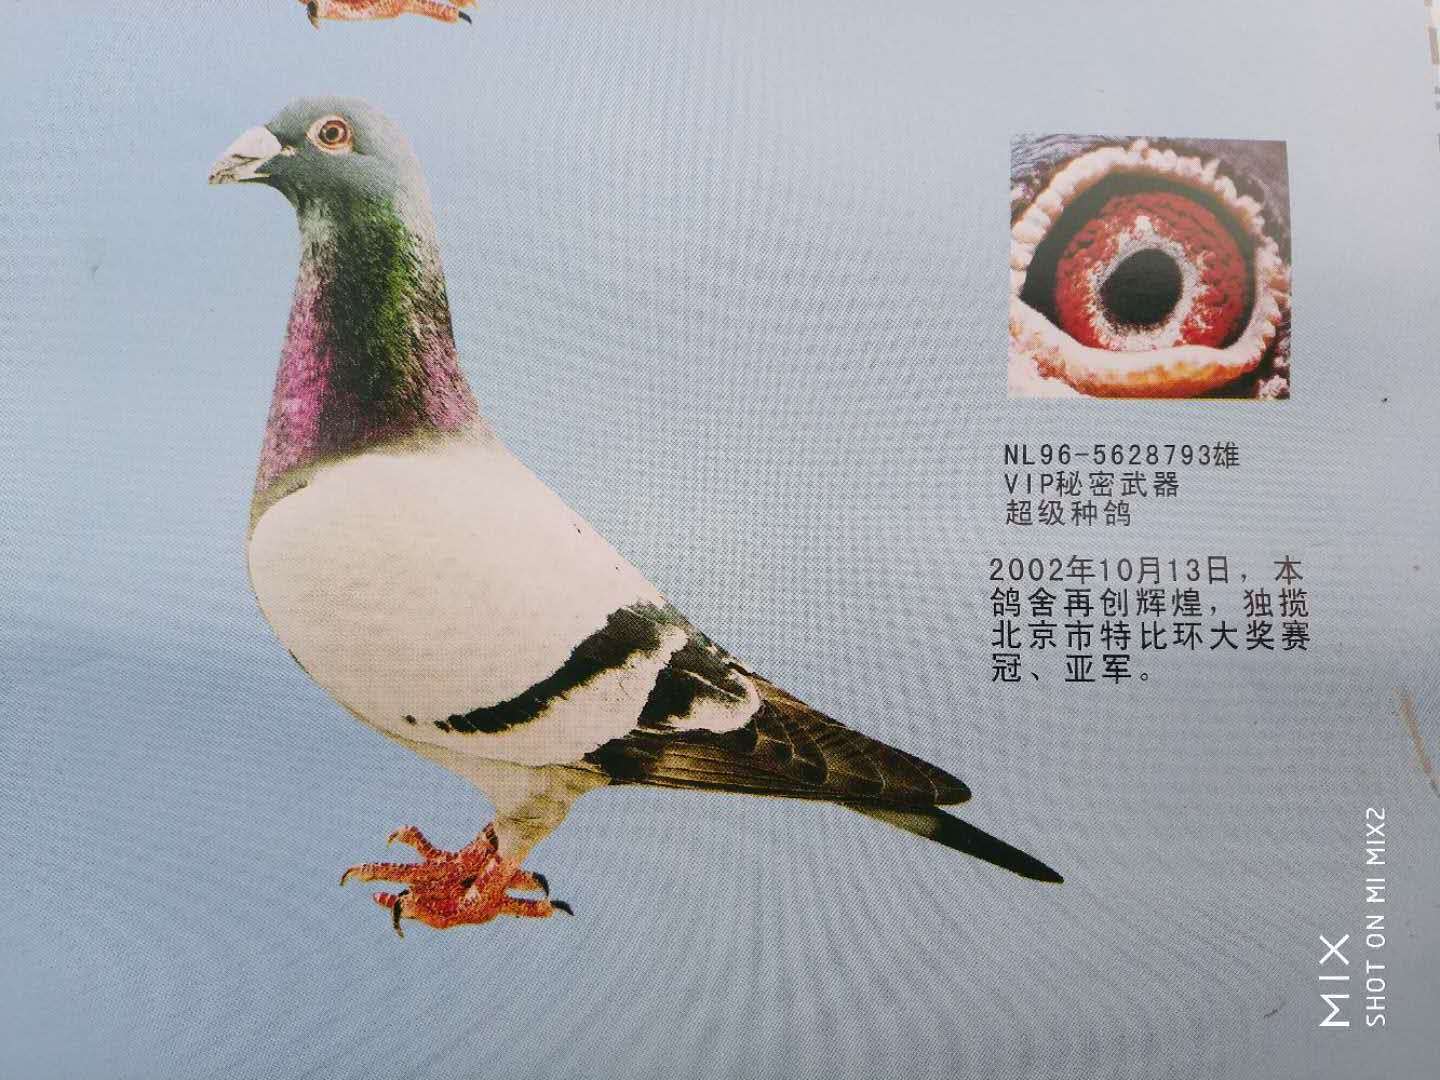 北京刘昆英鸽舍种鸽图图片